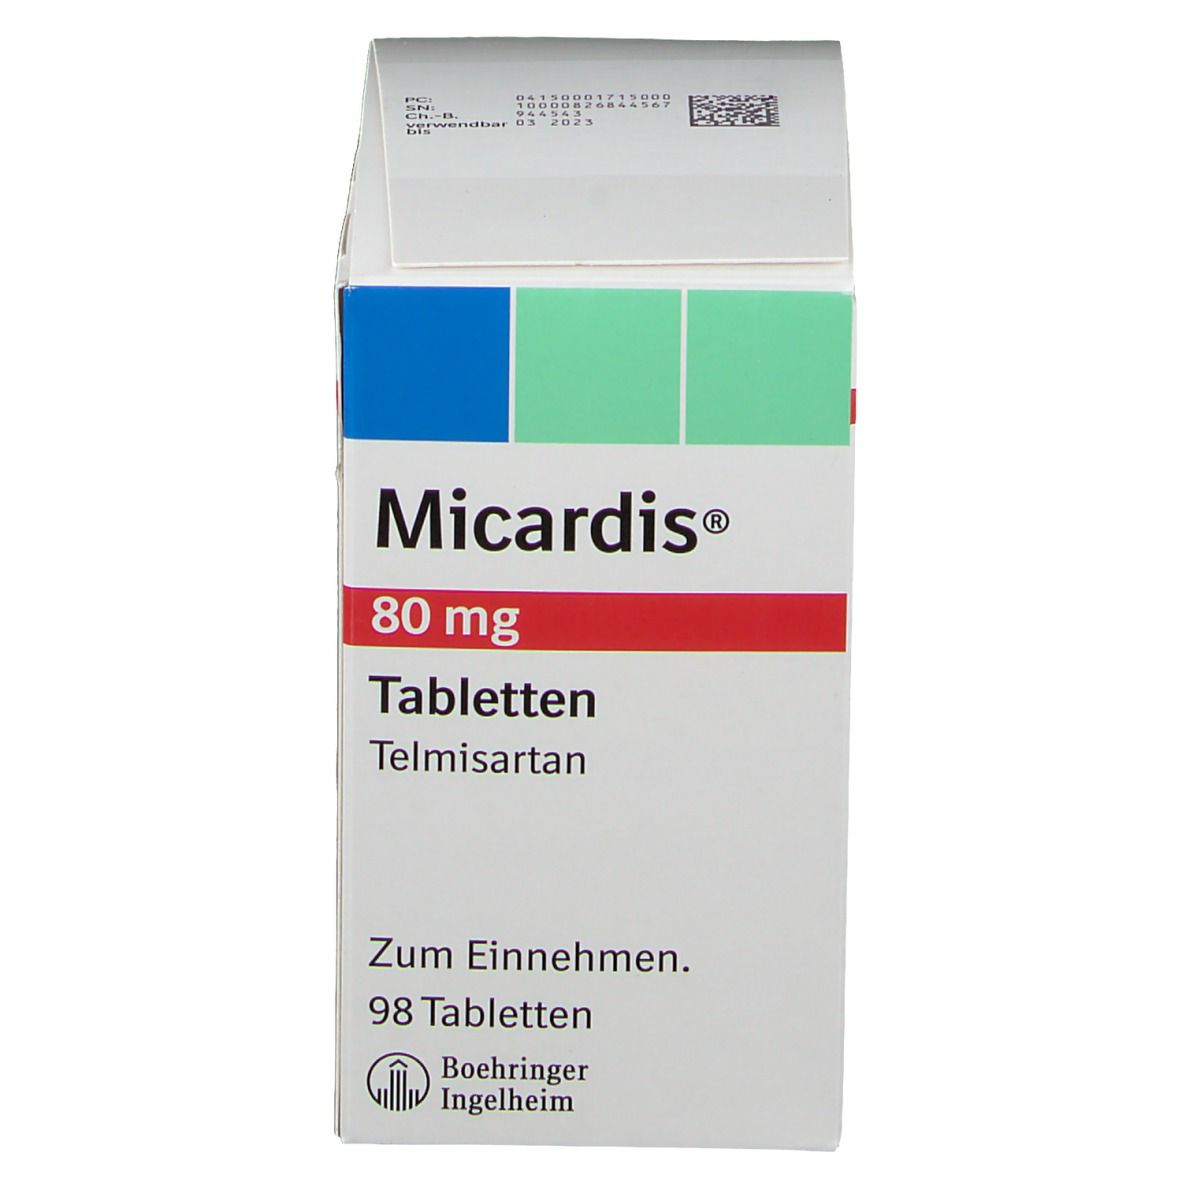 Micardis® 80 mg